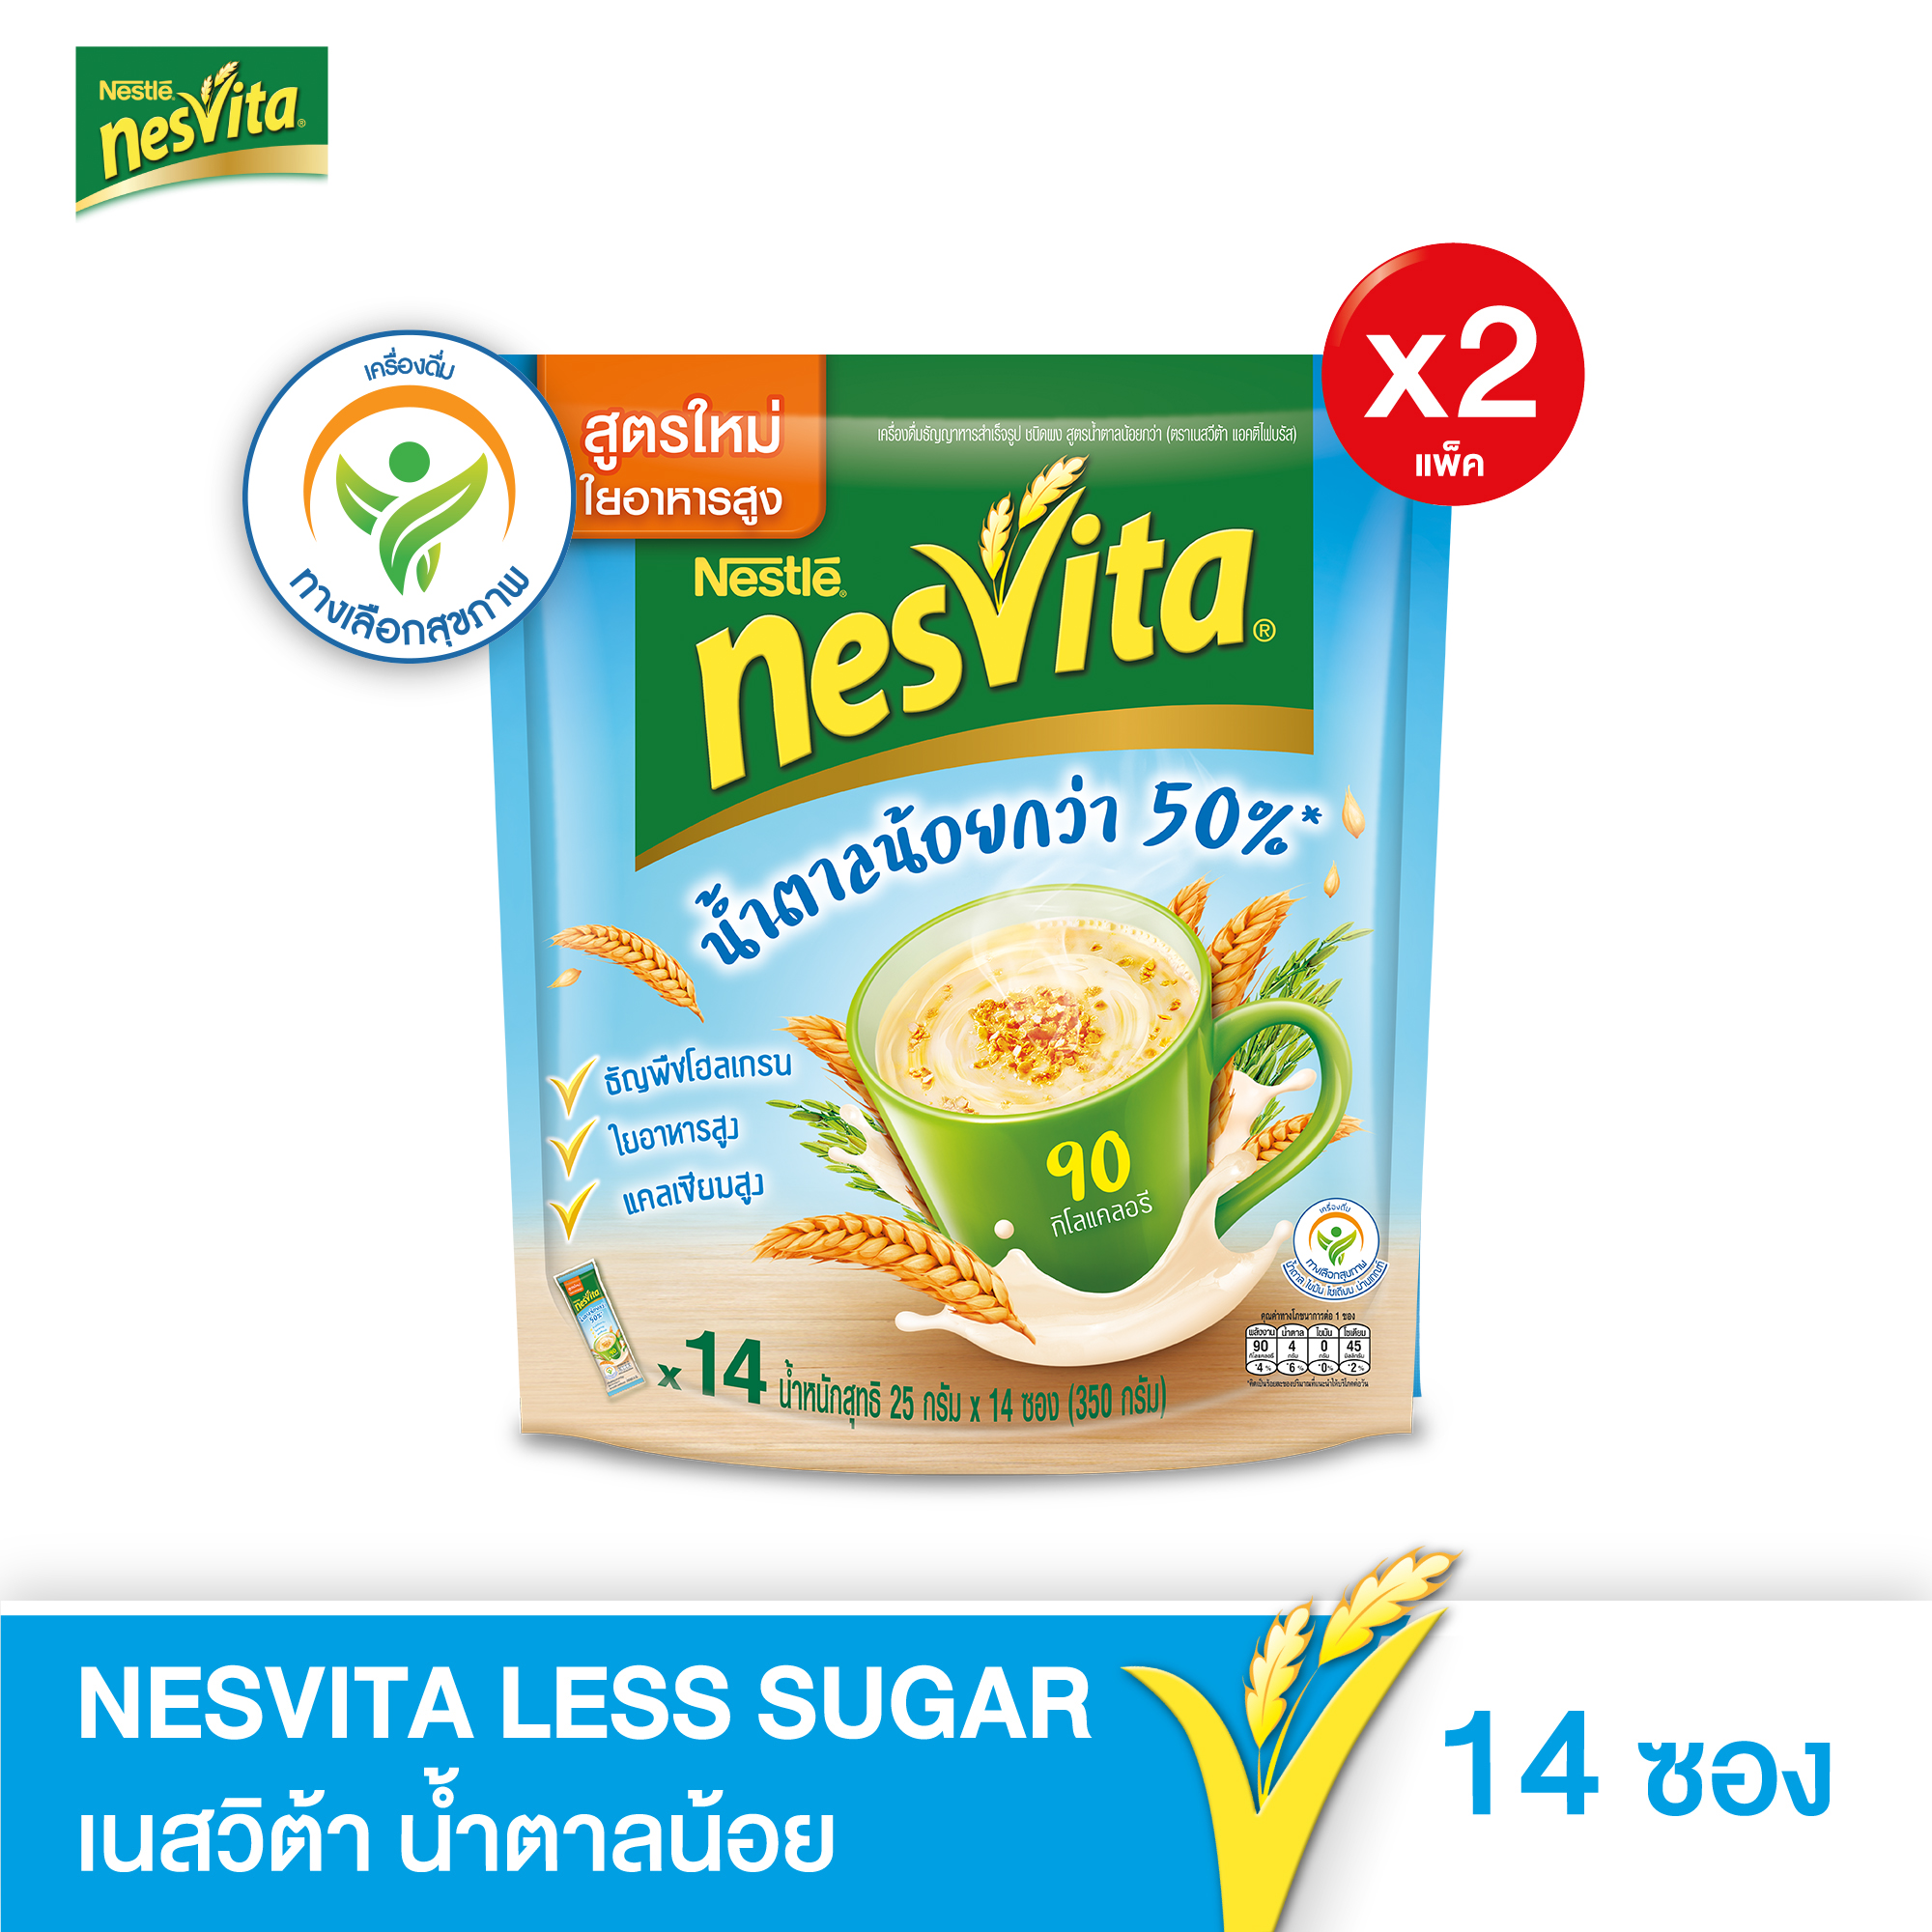 NESVITA เนสวิต้า เครื่องดื่มธัญญาหารสำเร็จรูป สูตรน้ำตาลน้อยกว่า  25 x 14 ซอง (2 แพ็ค)